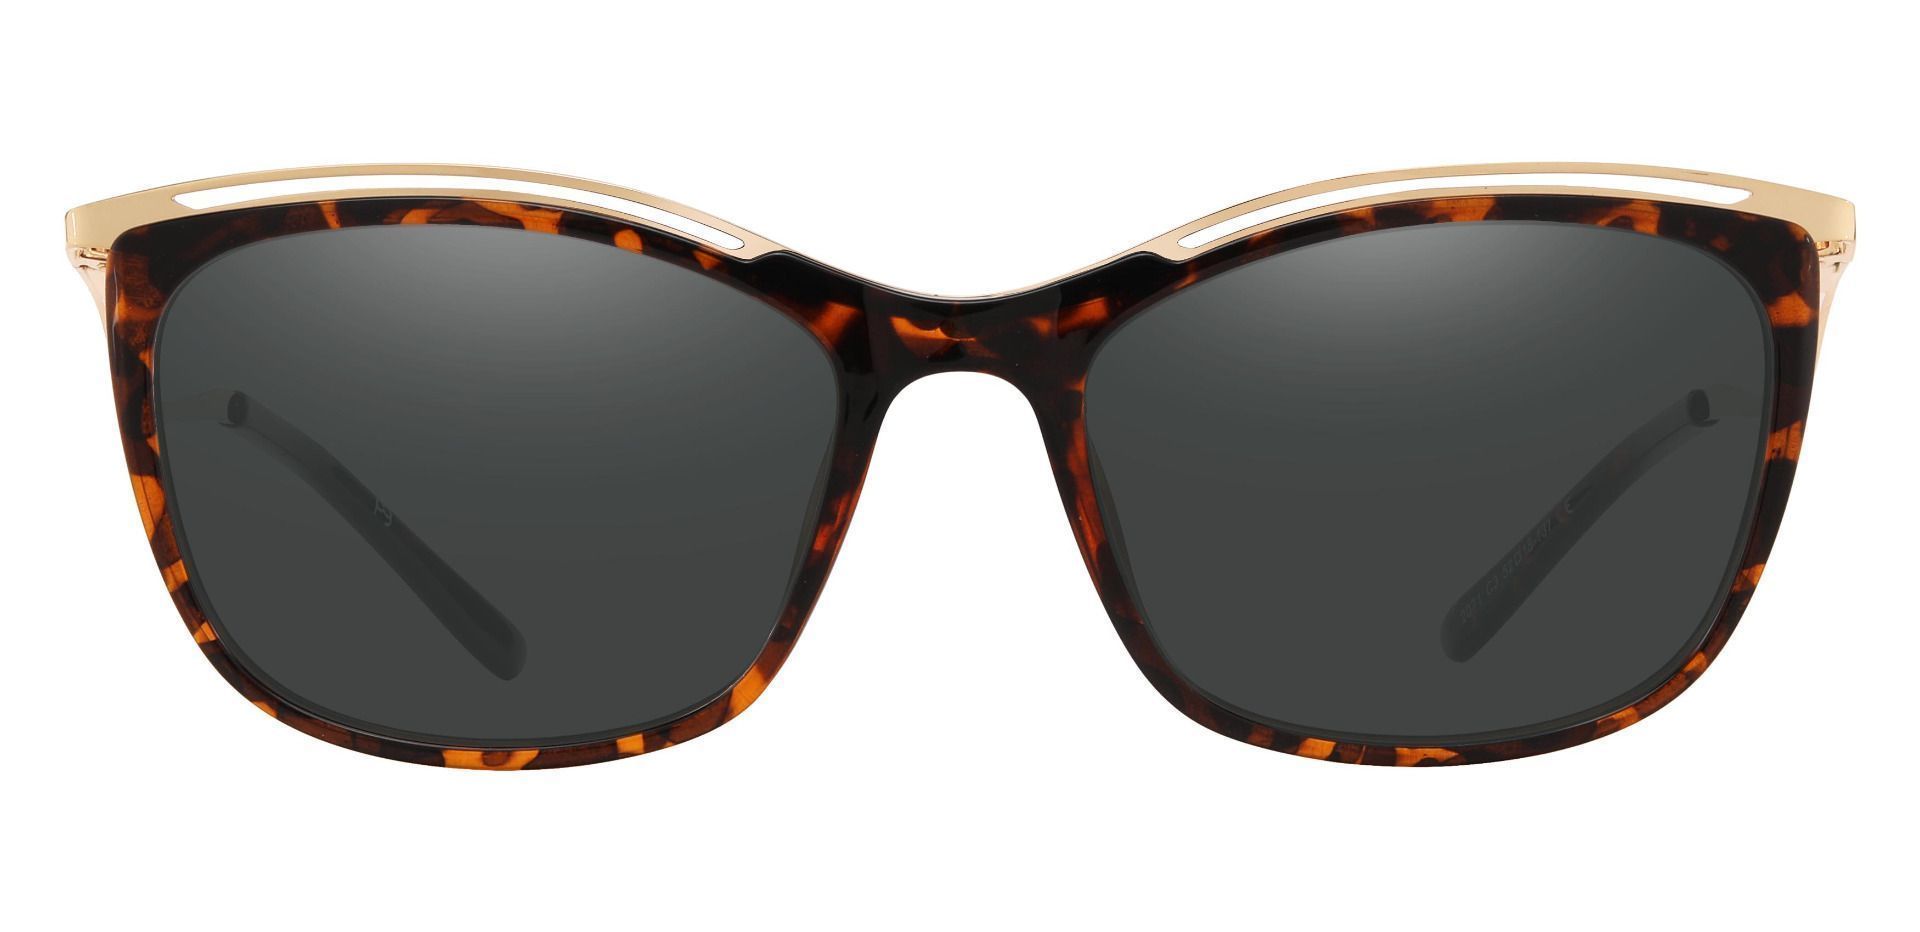 Enola Cat Eye Prescription Sunglasses - Tortoise Frame With Gray Lenses